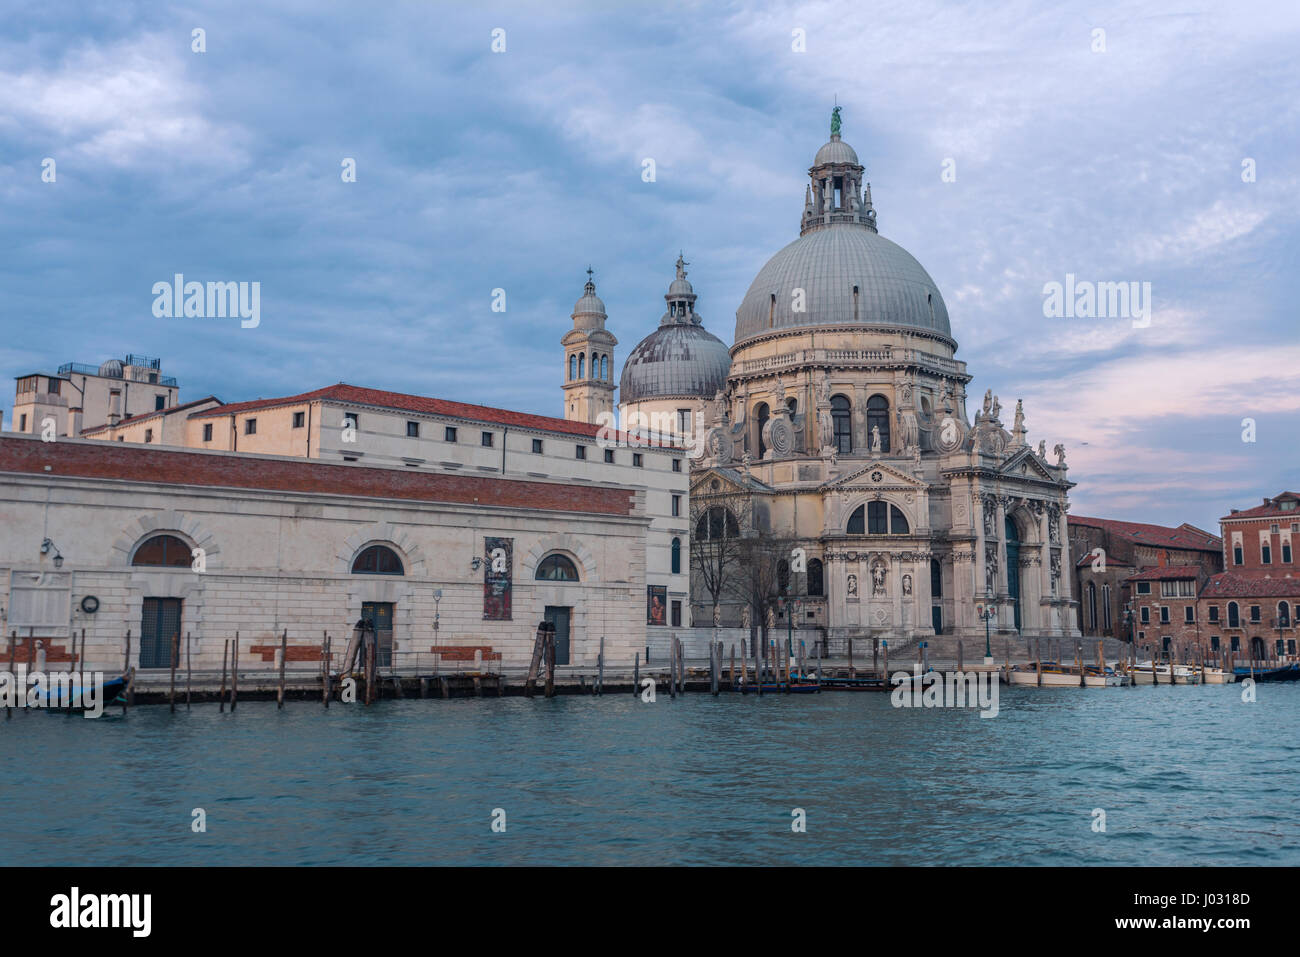 Basilica di Santa Maria della salute during blue hour seen from a vaporetto in Venice, Italy Stock Photo